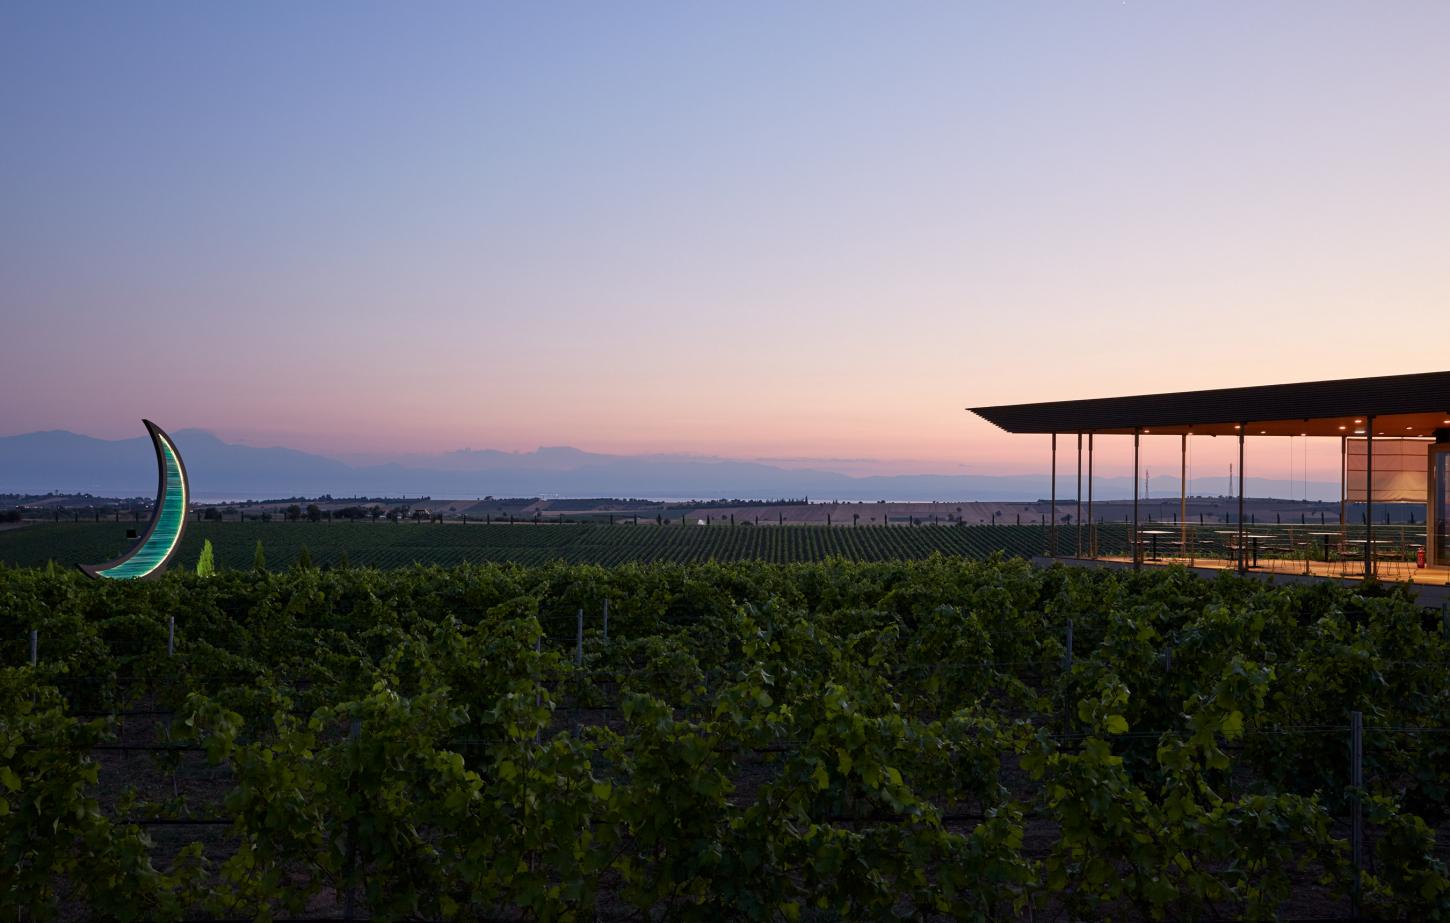 Geovasiliou vinyard Epanomi after sunset 